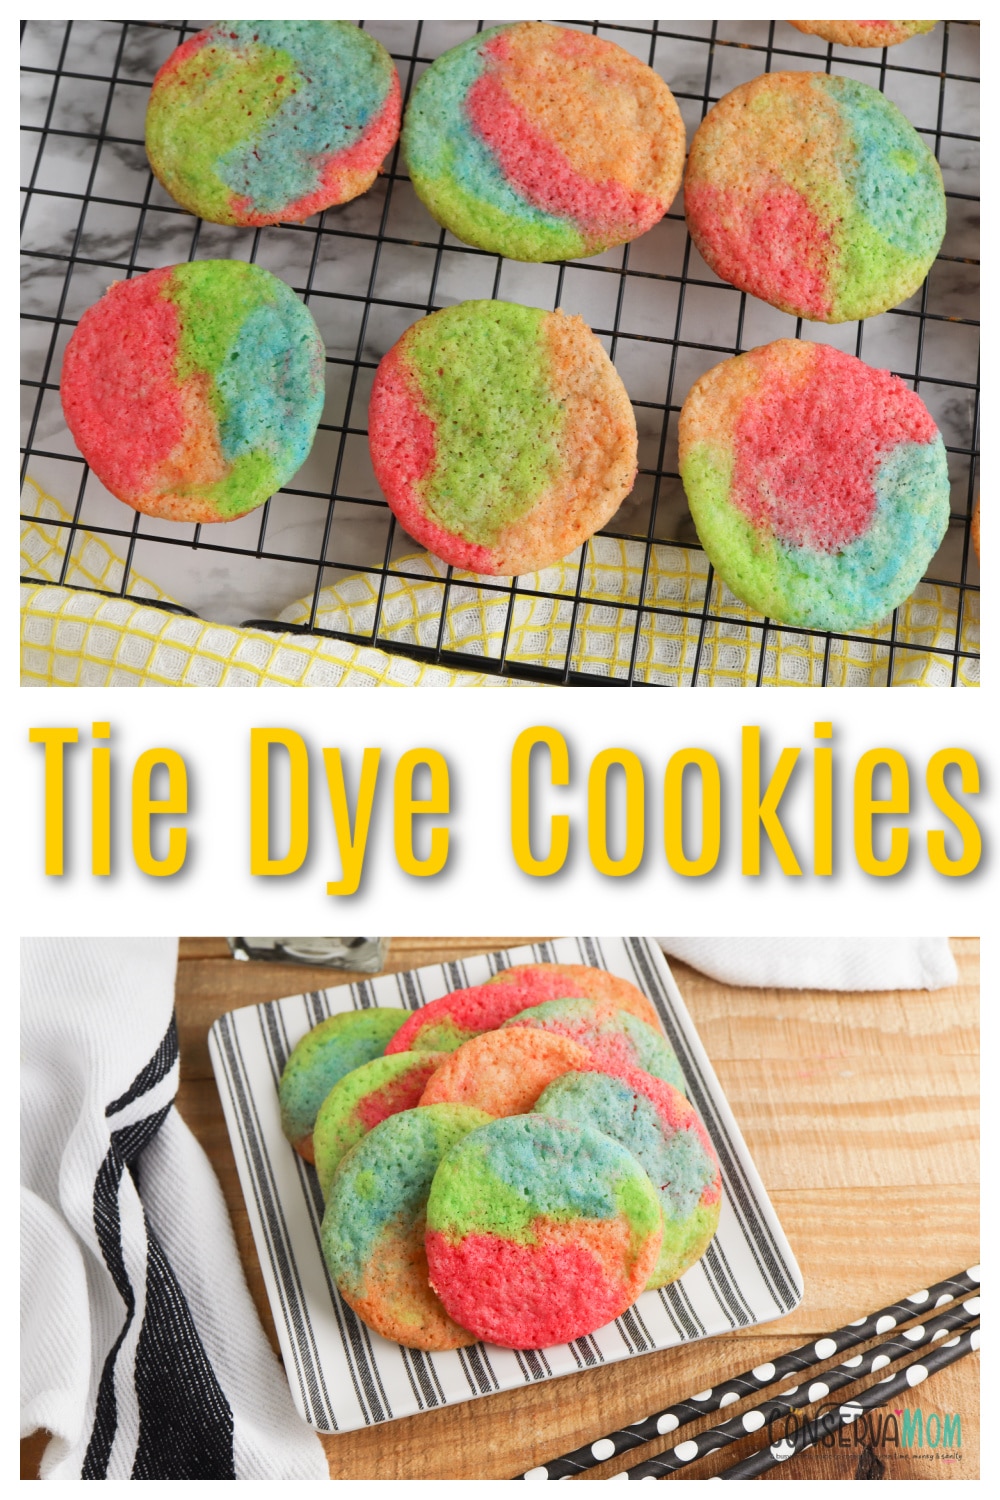 Tie Dye Cookies